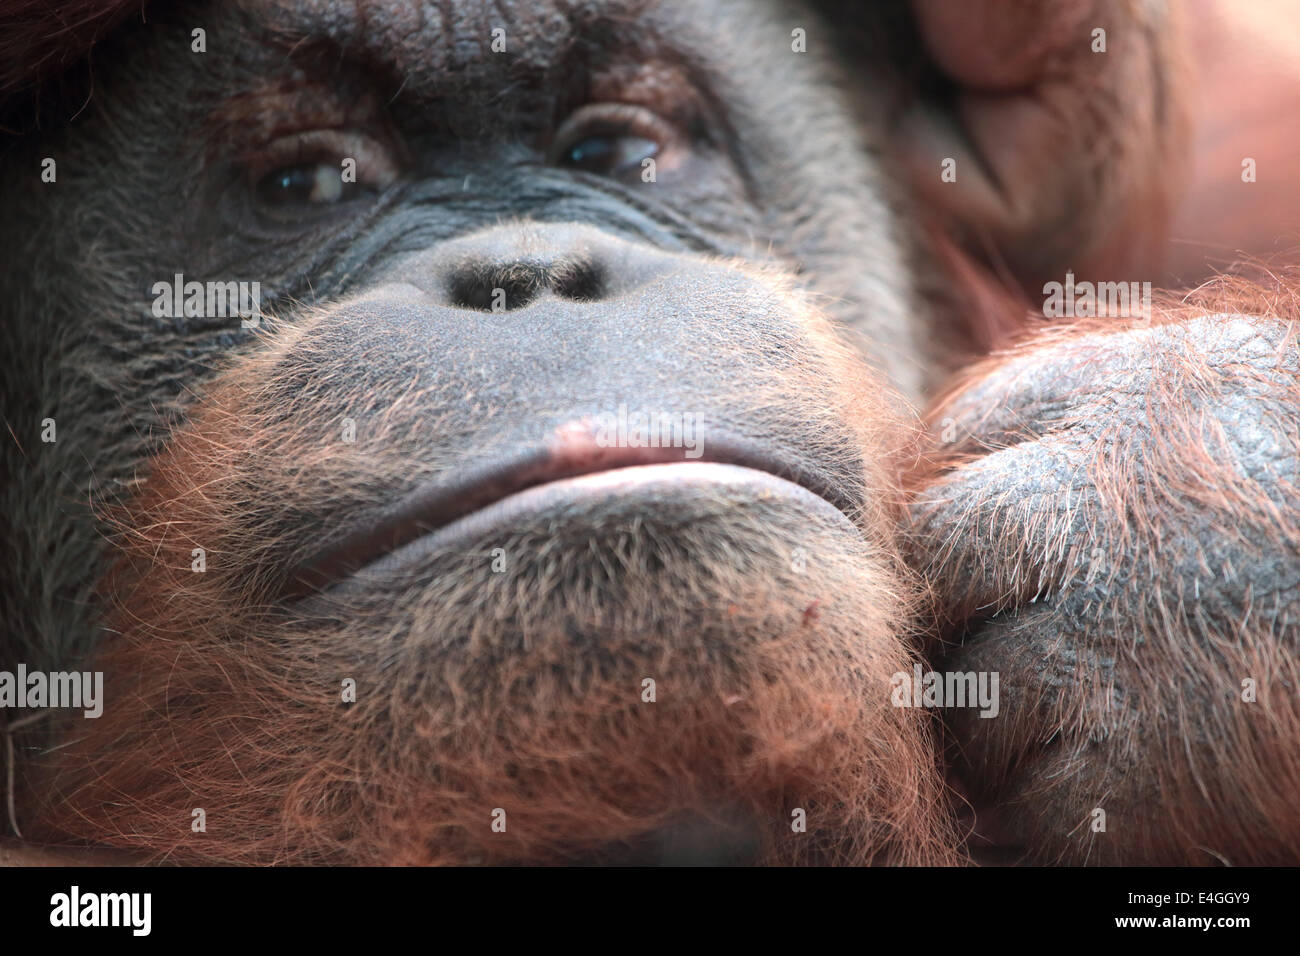 Close-up d'orang-outan, Pongo pygmaeus, un grand singe originaire de l'île de Bornéo Banque D'Images